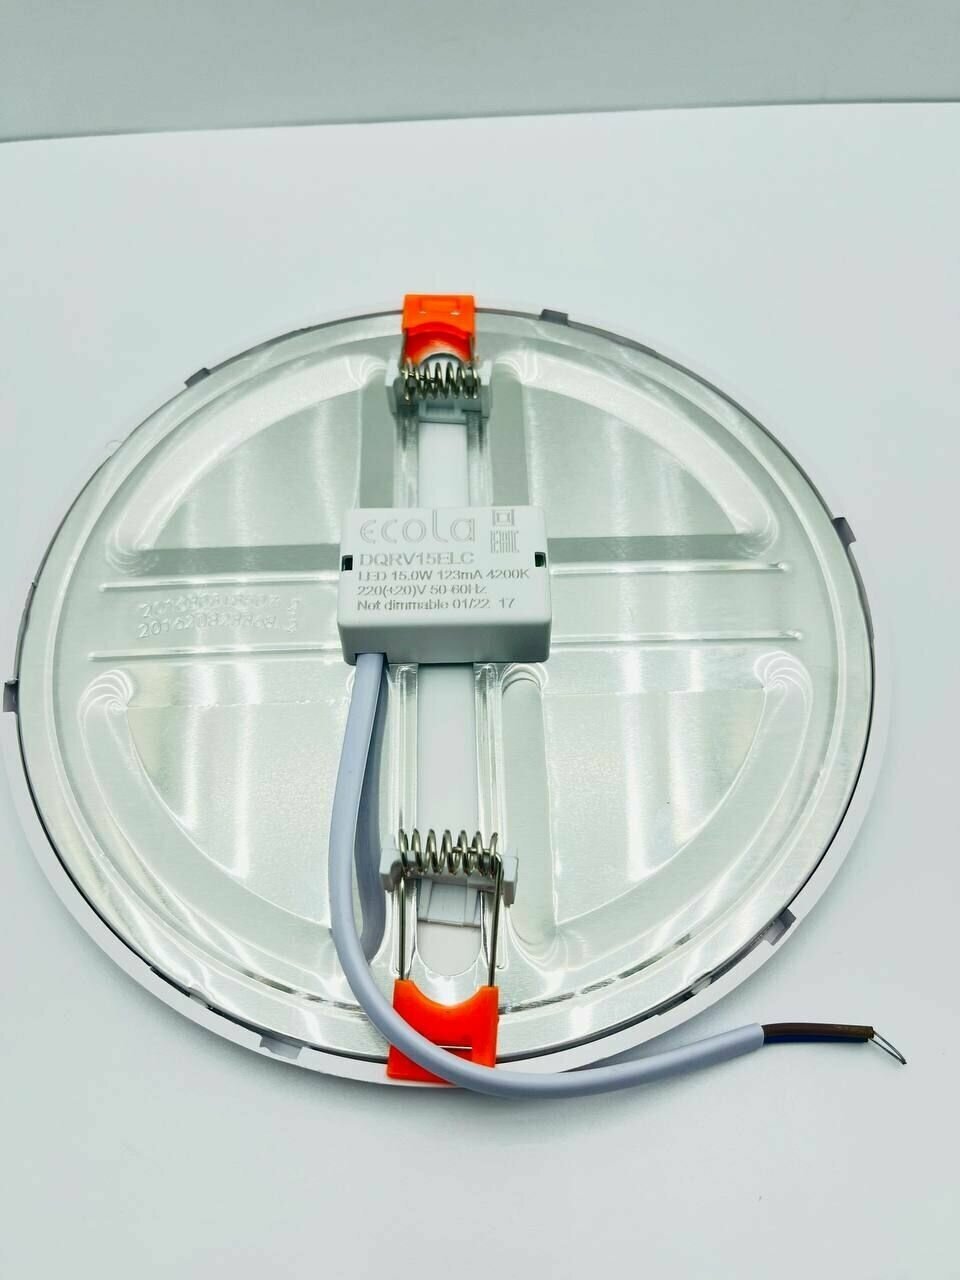 Потолочный светильник/ Встраиваемый светильник 15Вт/ Даунлайт Ecola LED с креплением под любое отверстие (50-160mm) 15W 220V 4200K дневной белый свет